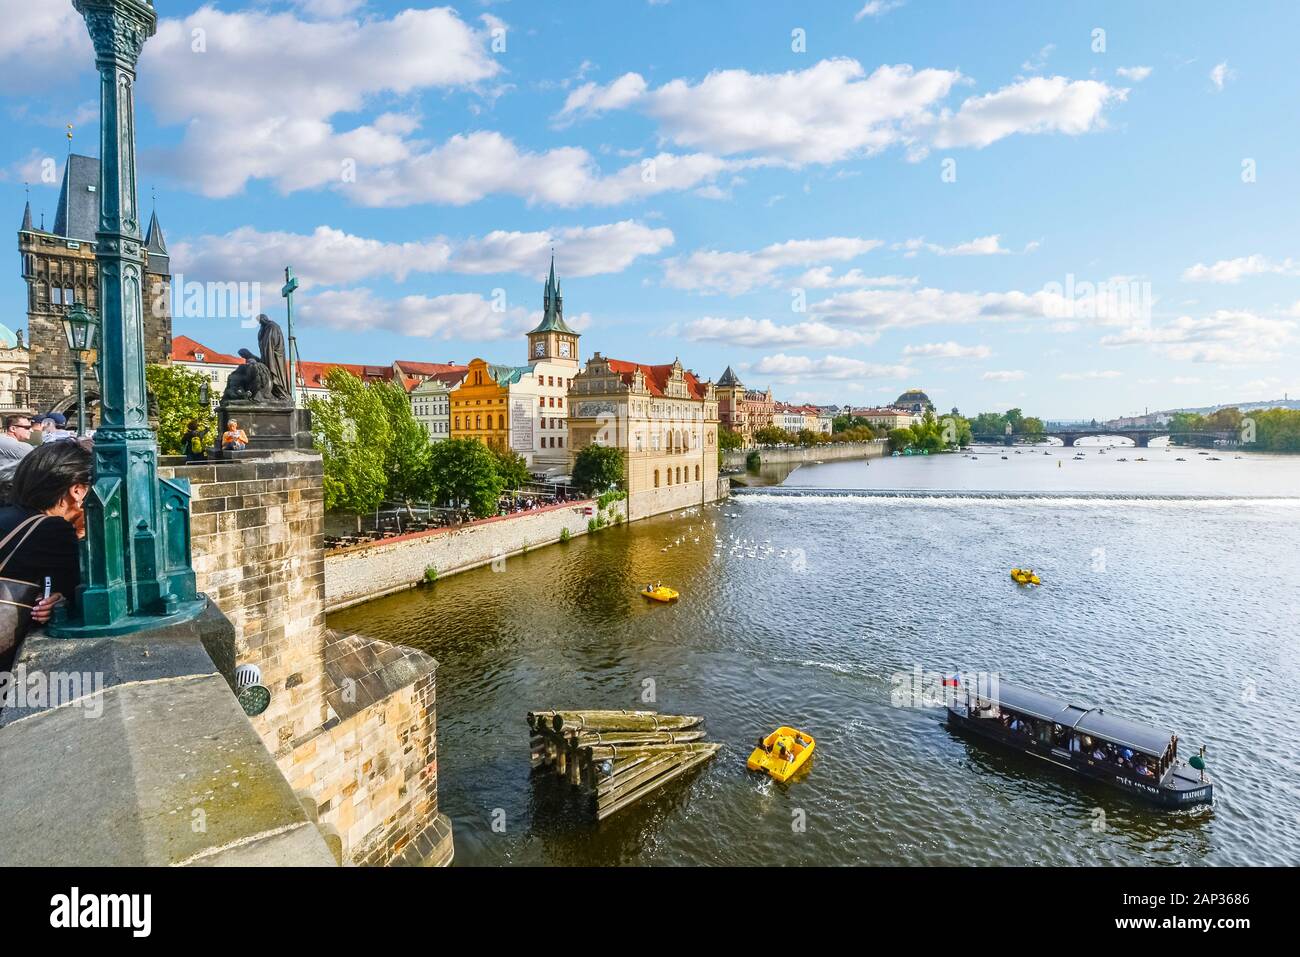 Blick auf die Altstadt von der Karlsbrücke, wenn das Pedal und Touristische boote Kreuzfahrt neben den Schwänen in der Moldau in Prag, Tschechien. Stockfoto